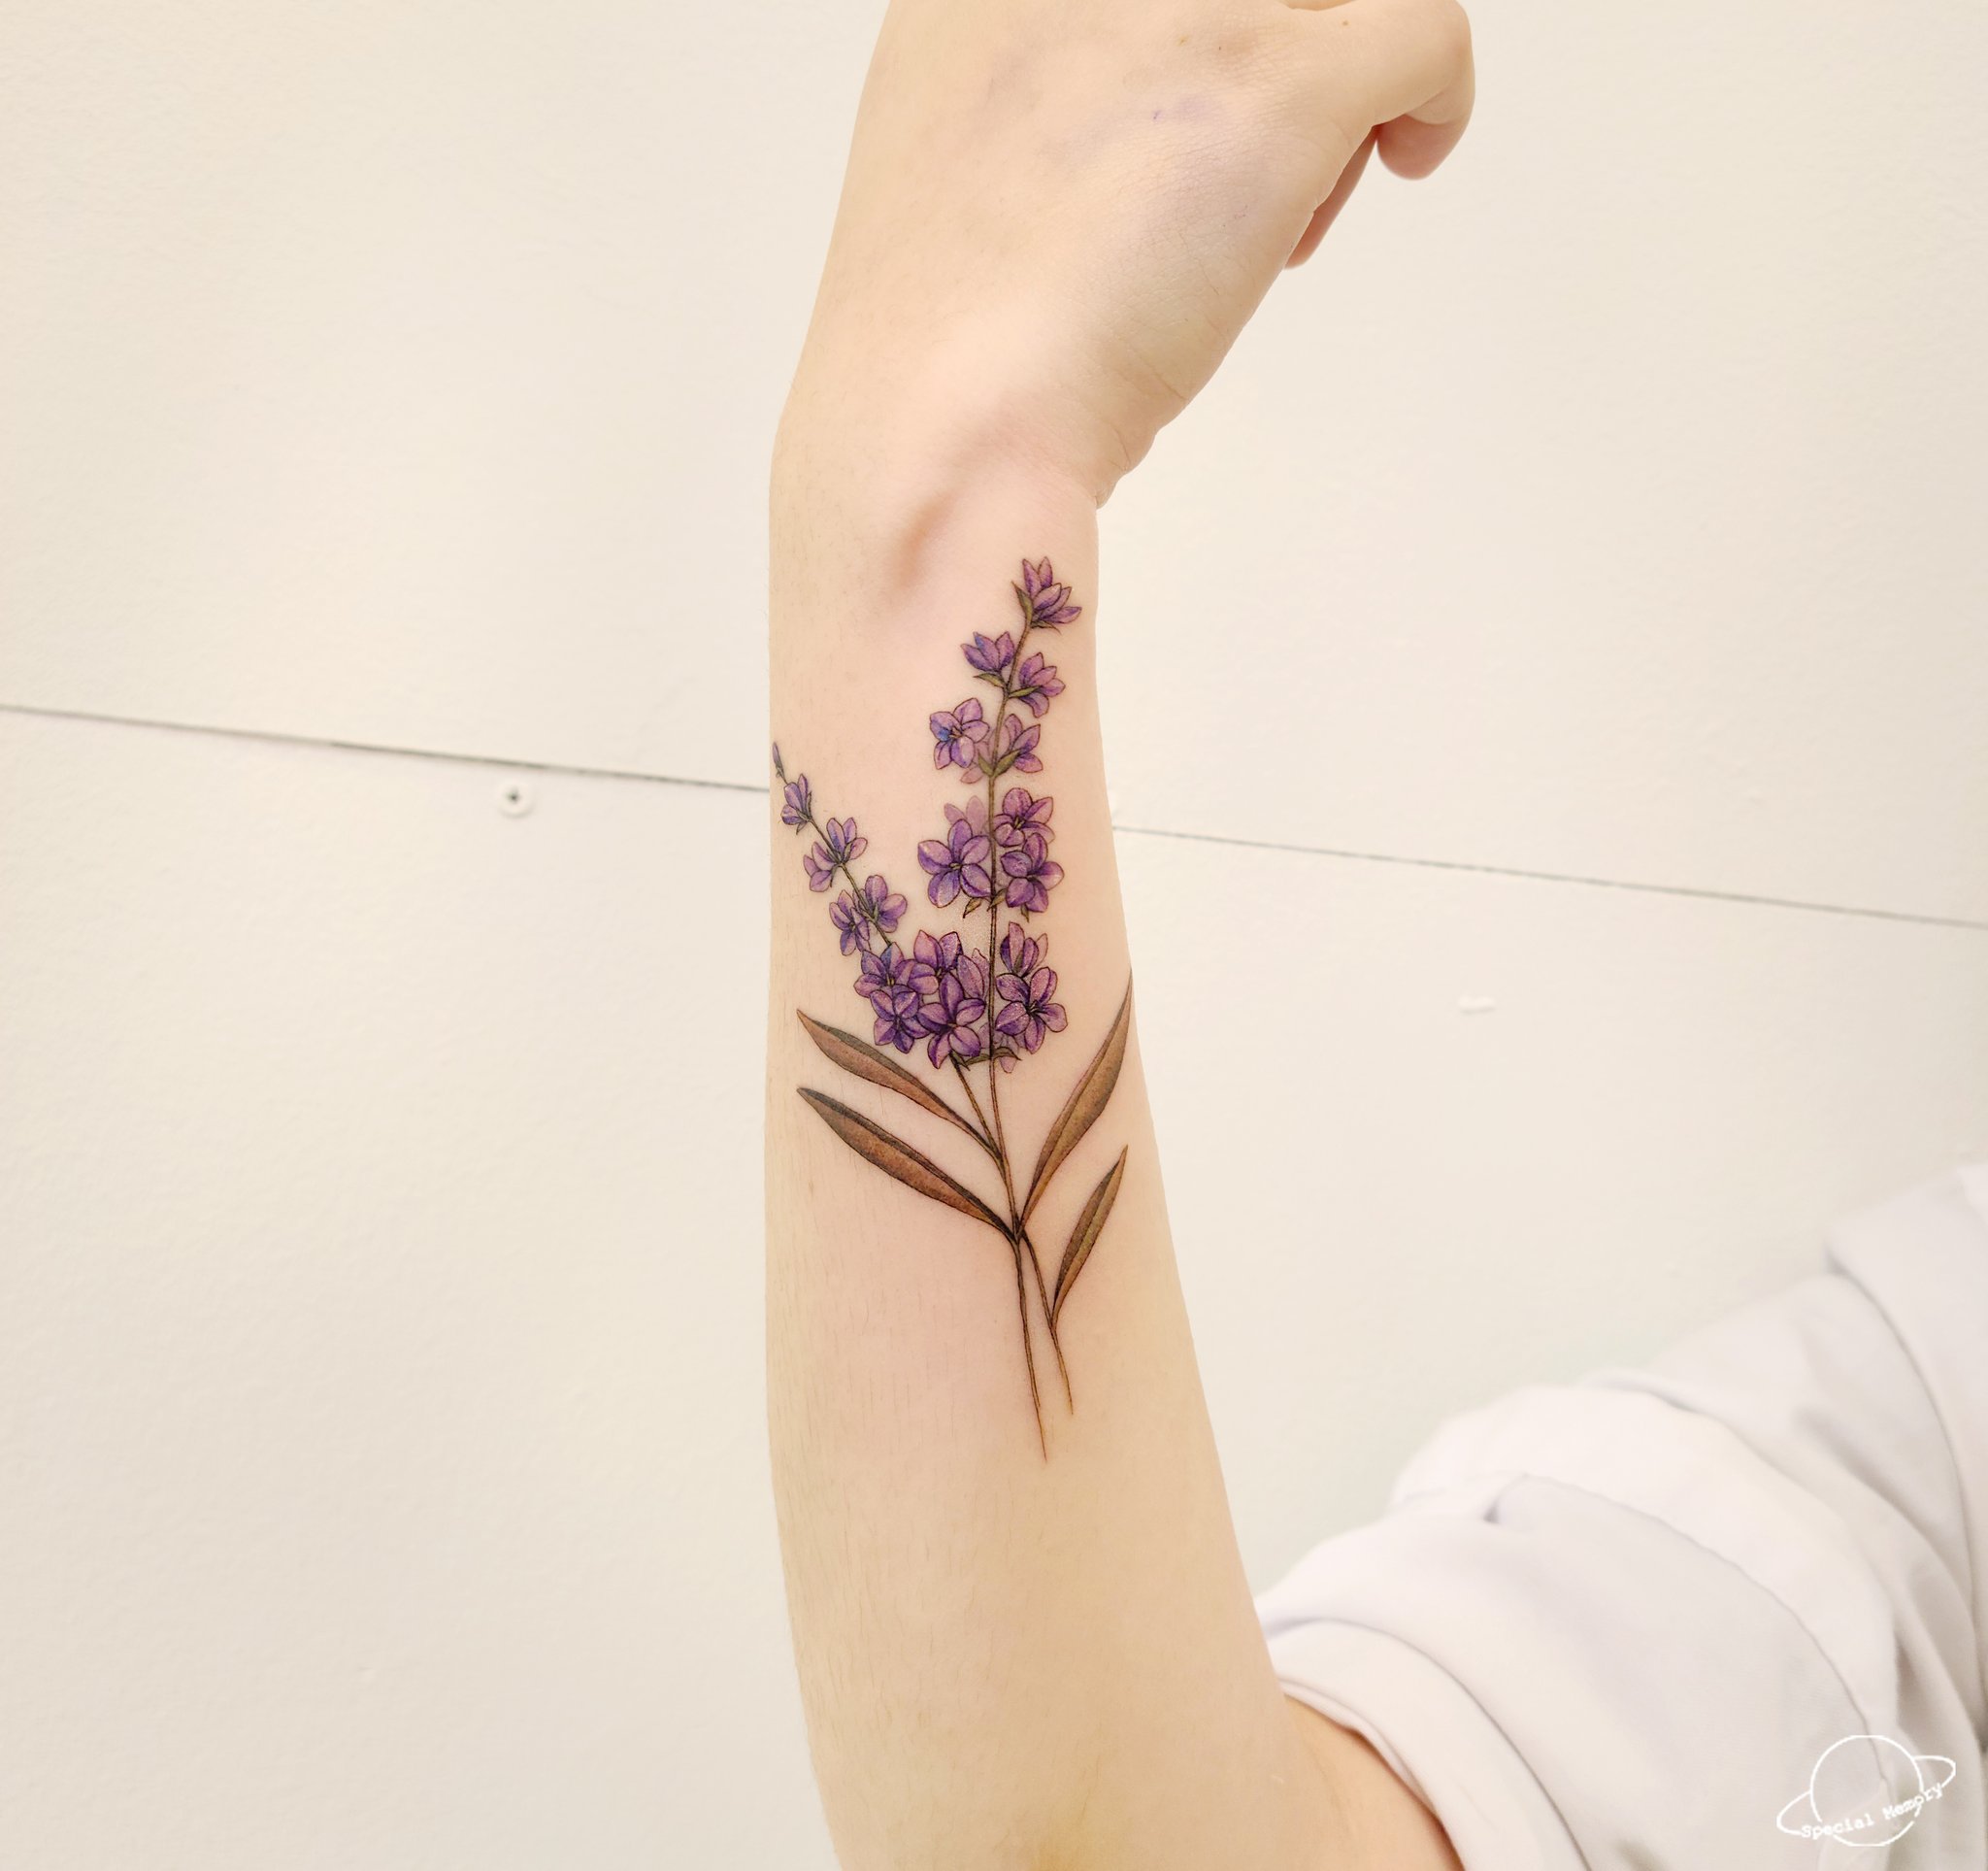 Korea Yong R Tattooer カラーのラベンダーで腕にポイントしました ソウルタトゥー ホンデタトゥー 韓国タトゥー ワンポイントタトゥー ホンデタトゥー ポイントタトゥー T Co Yvstcgpg0y Twitter